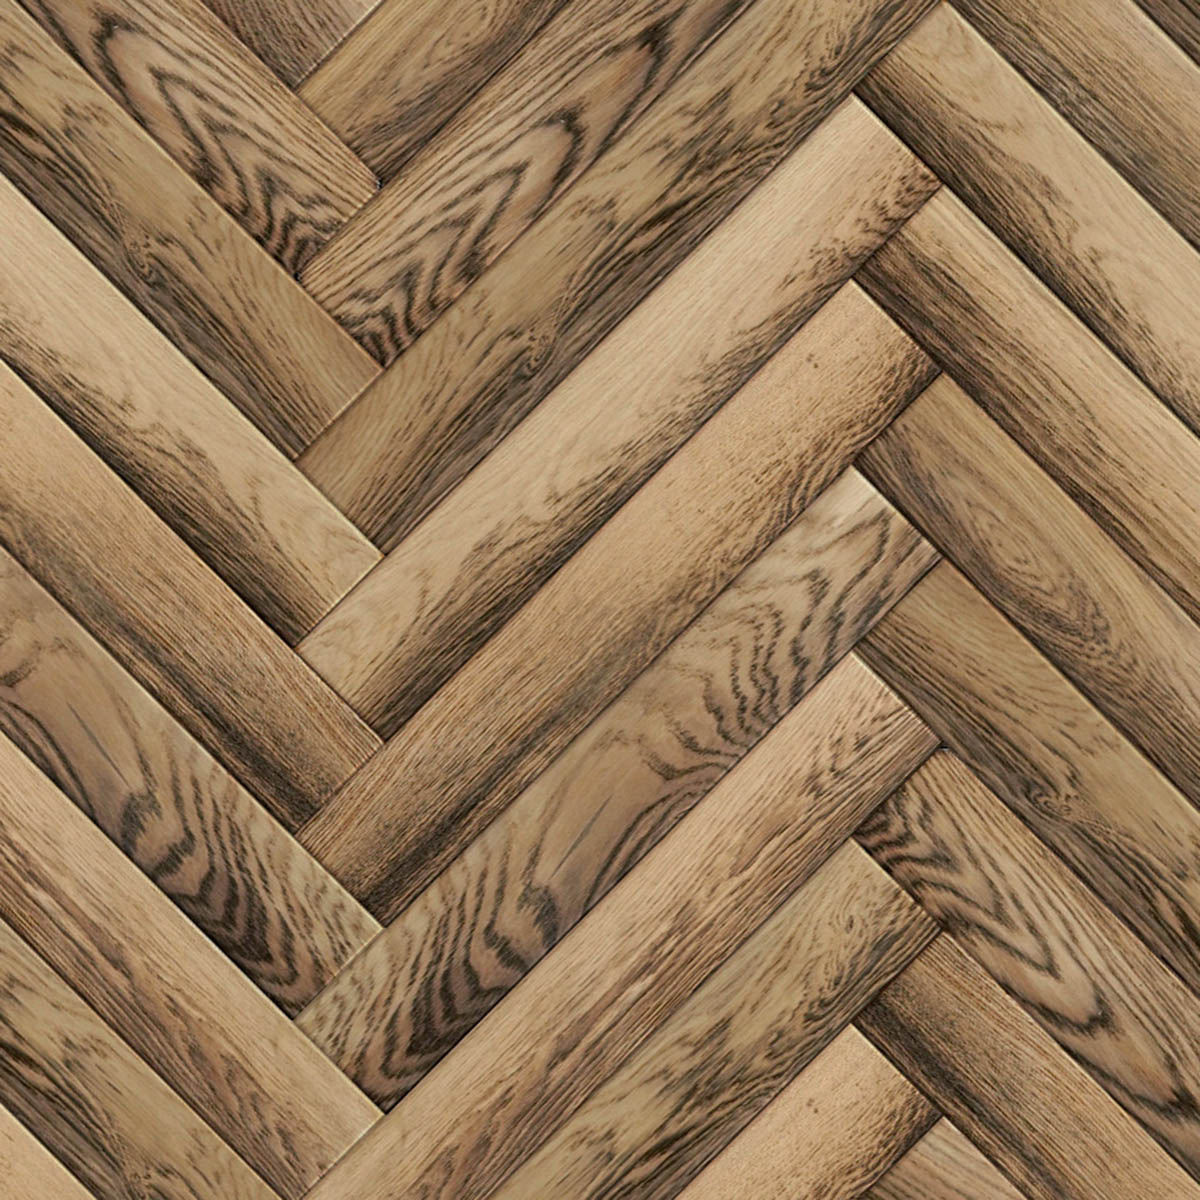 Pale herringbone smoked parquet european oak engineered wood flooring